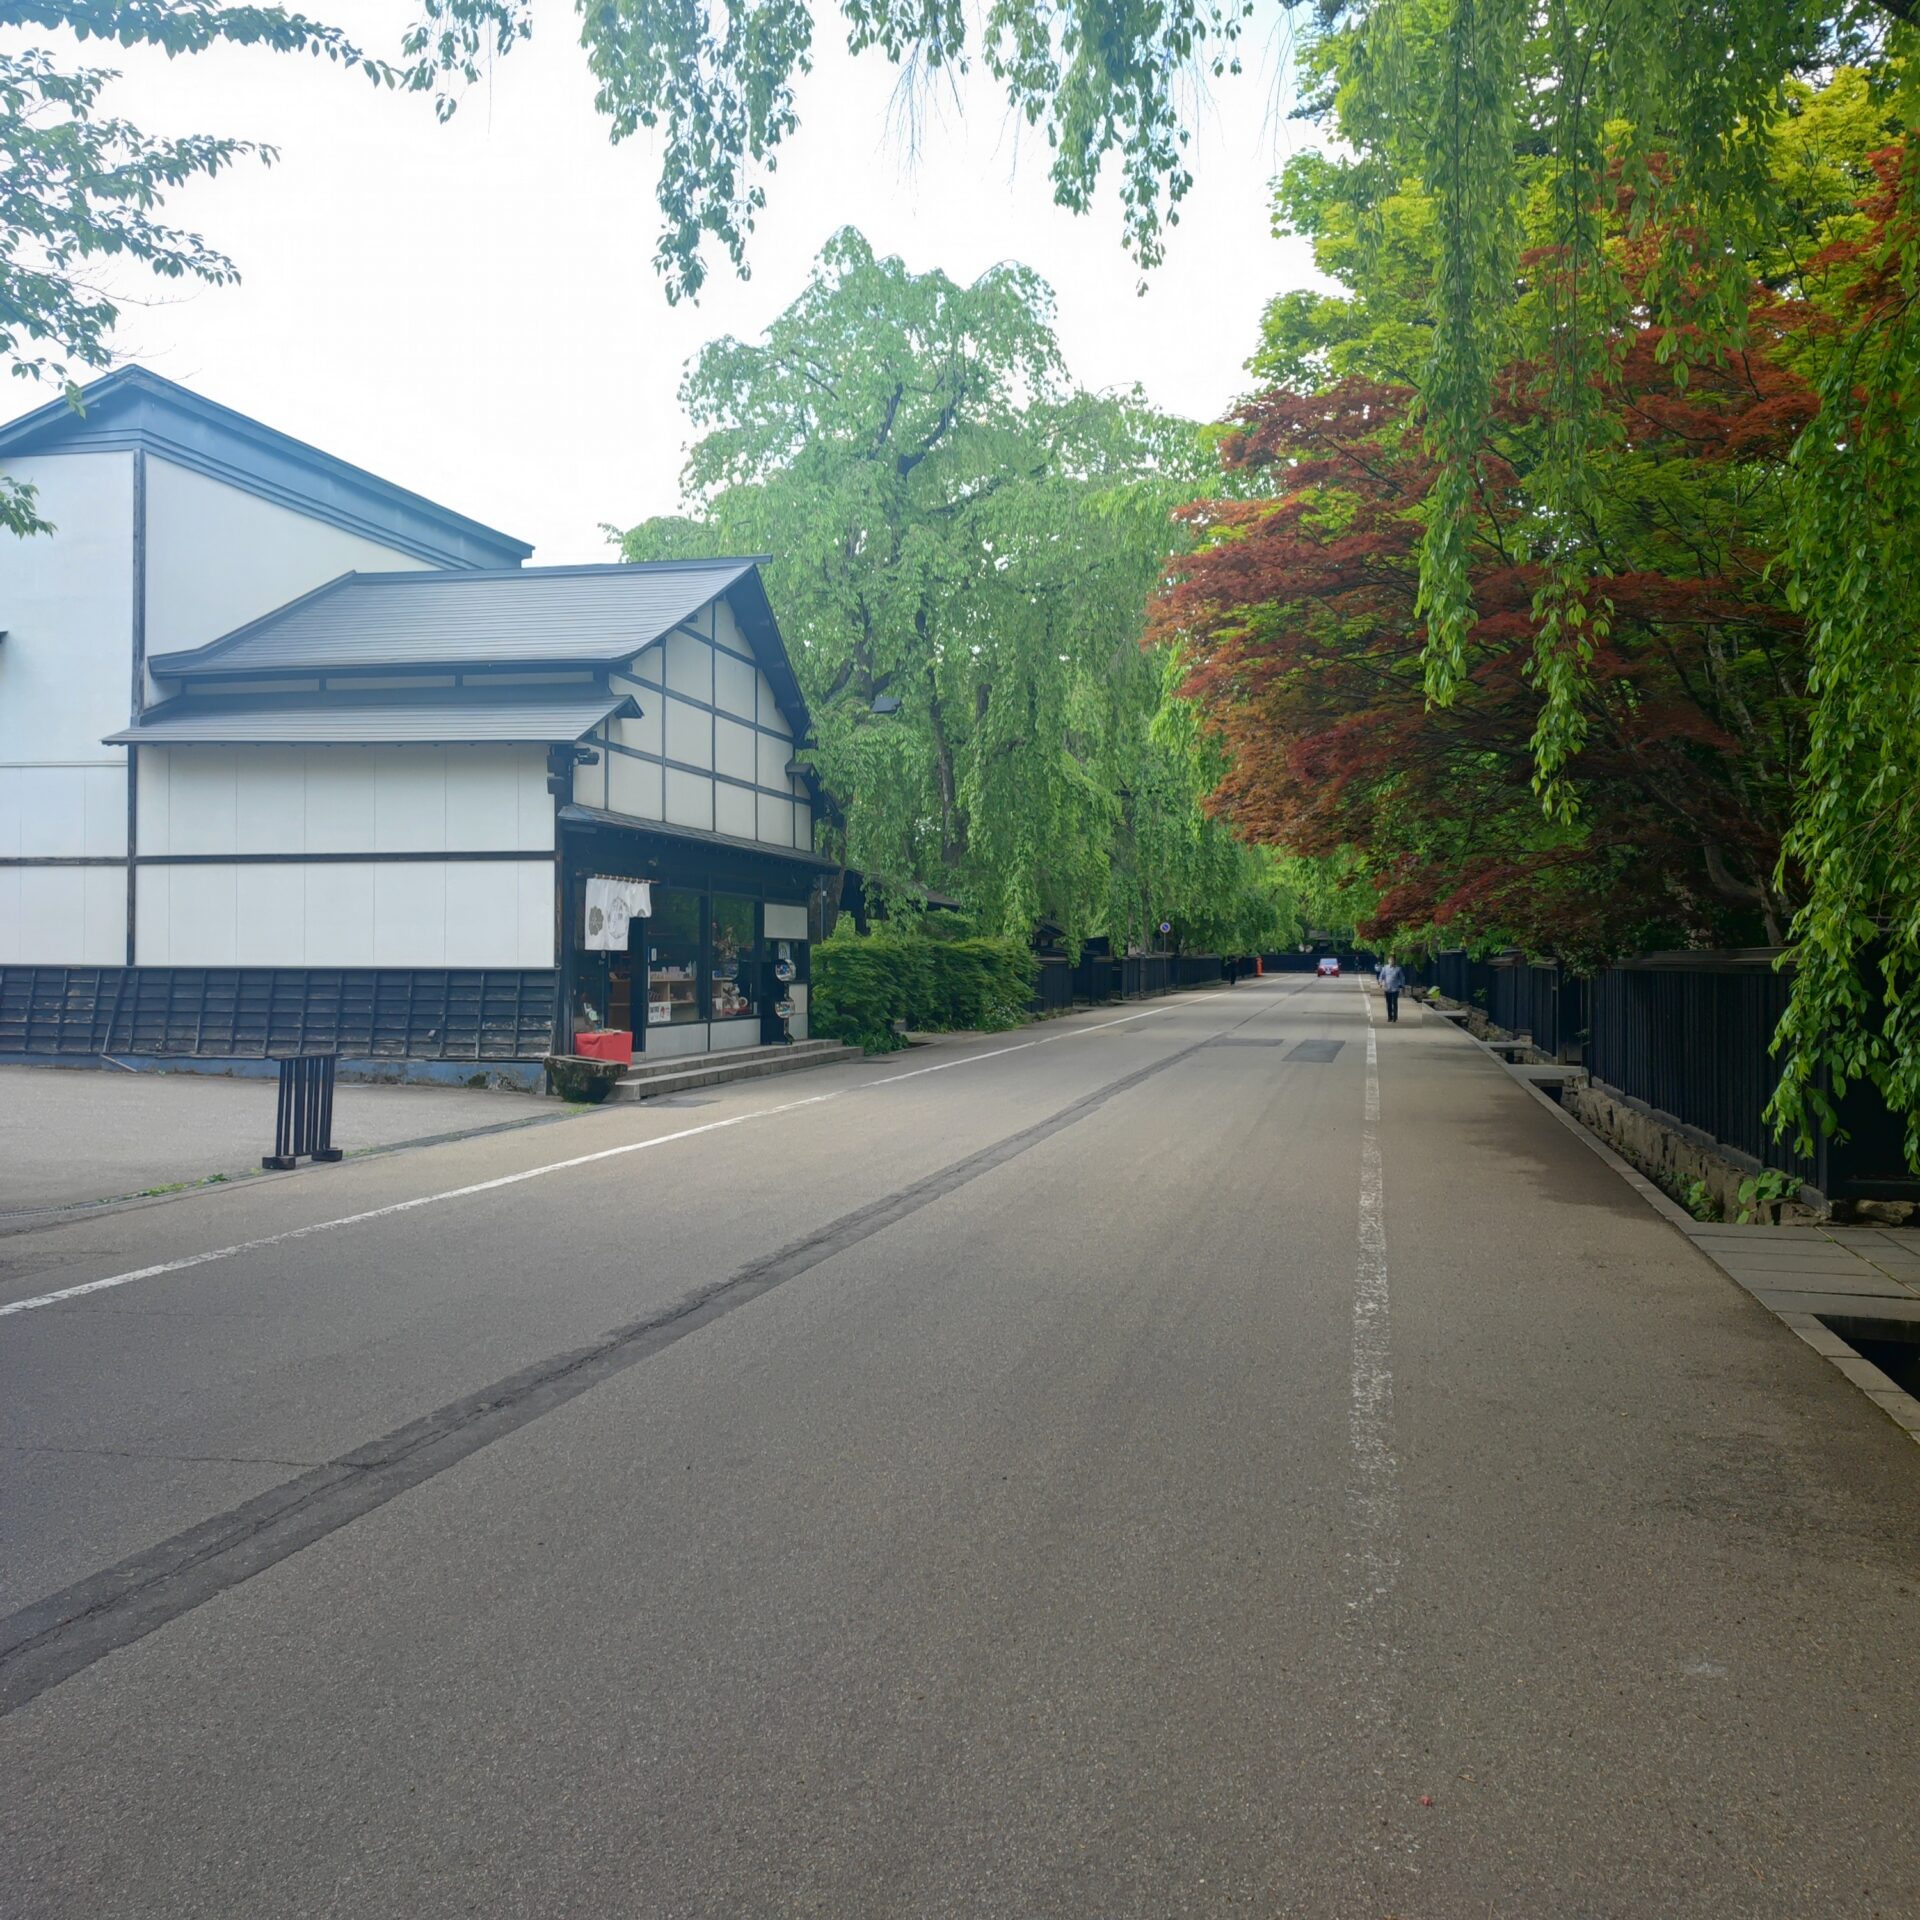 Road to FIRE | どこかにビューーン！で角館～田沢湖へ旅行しました。（2023年5月）